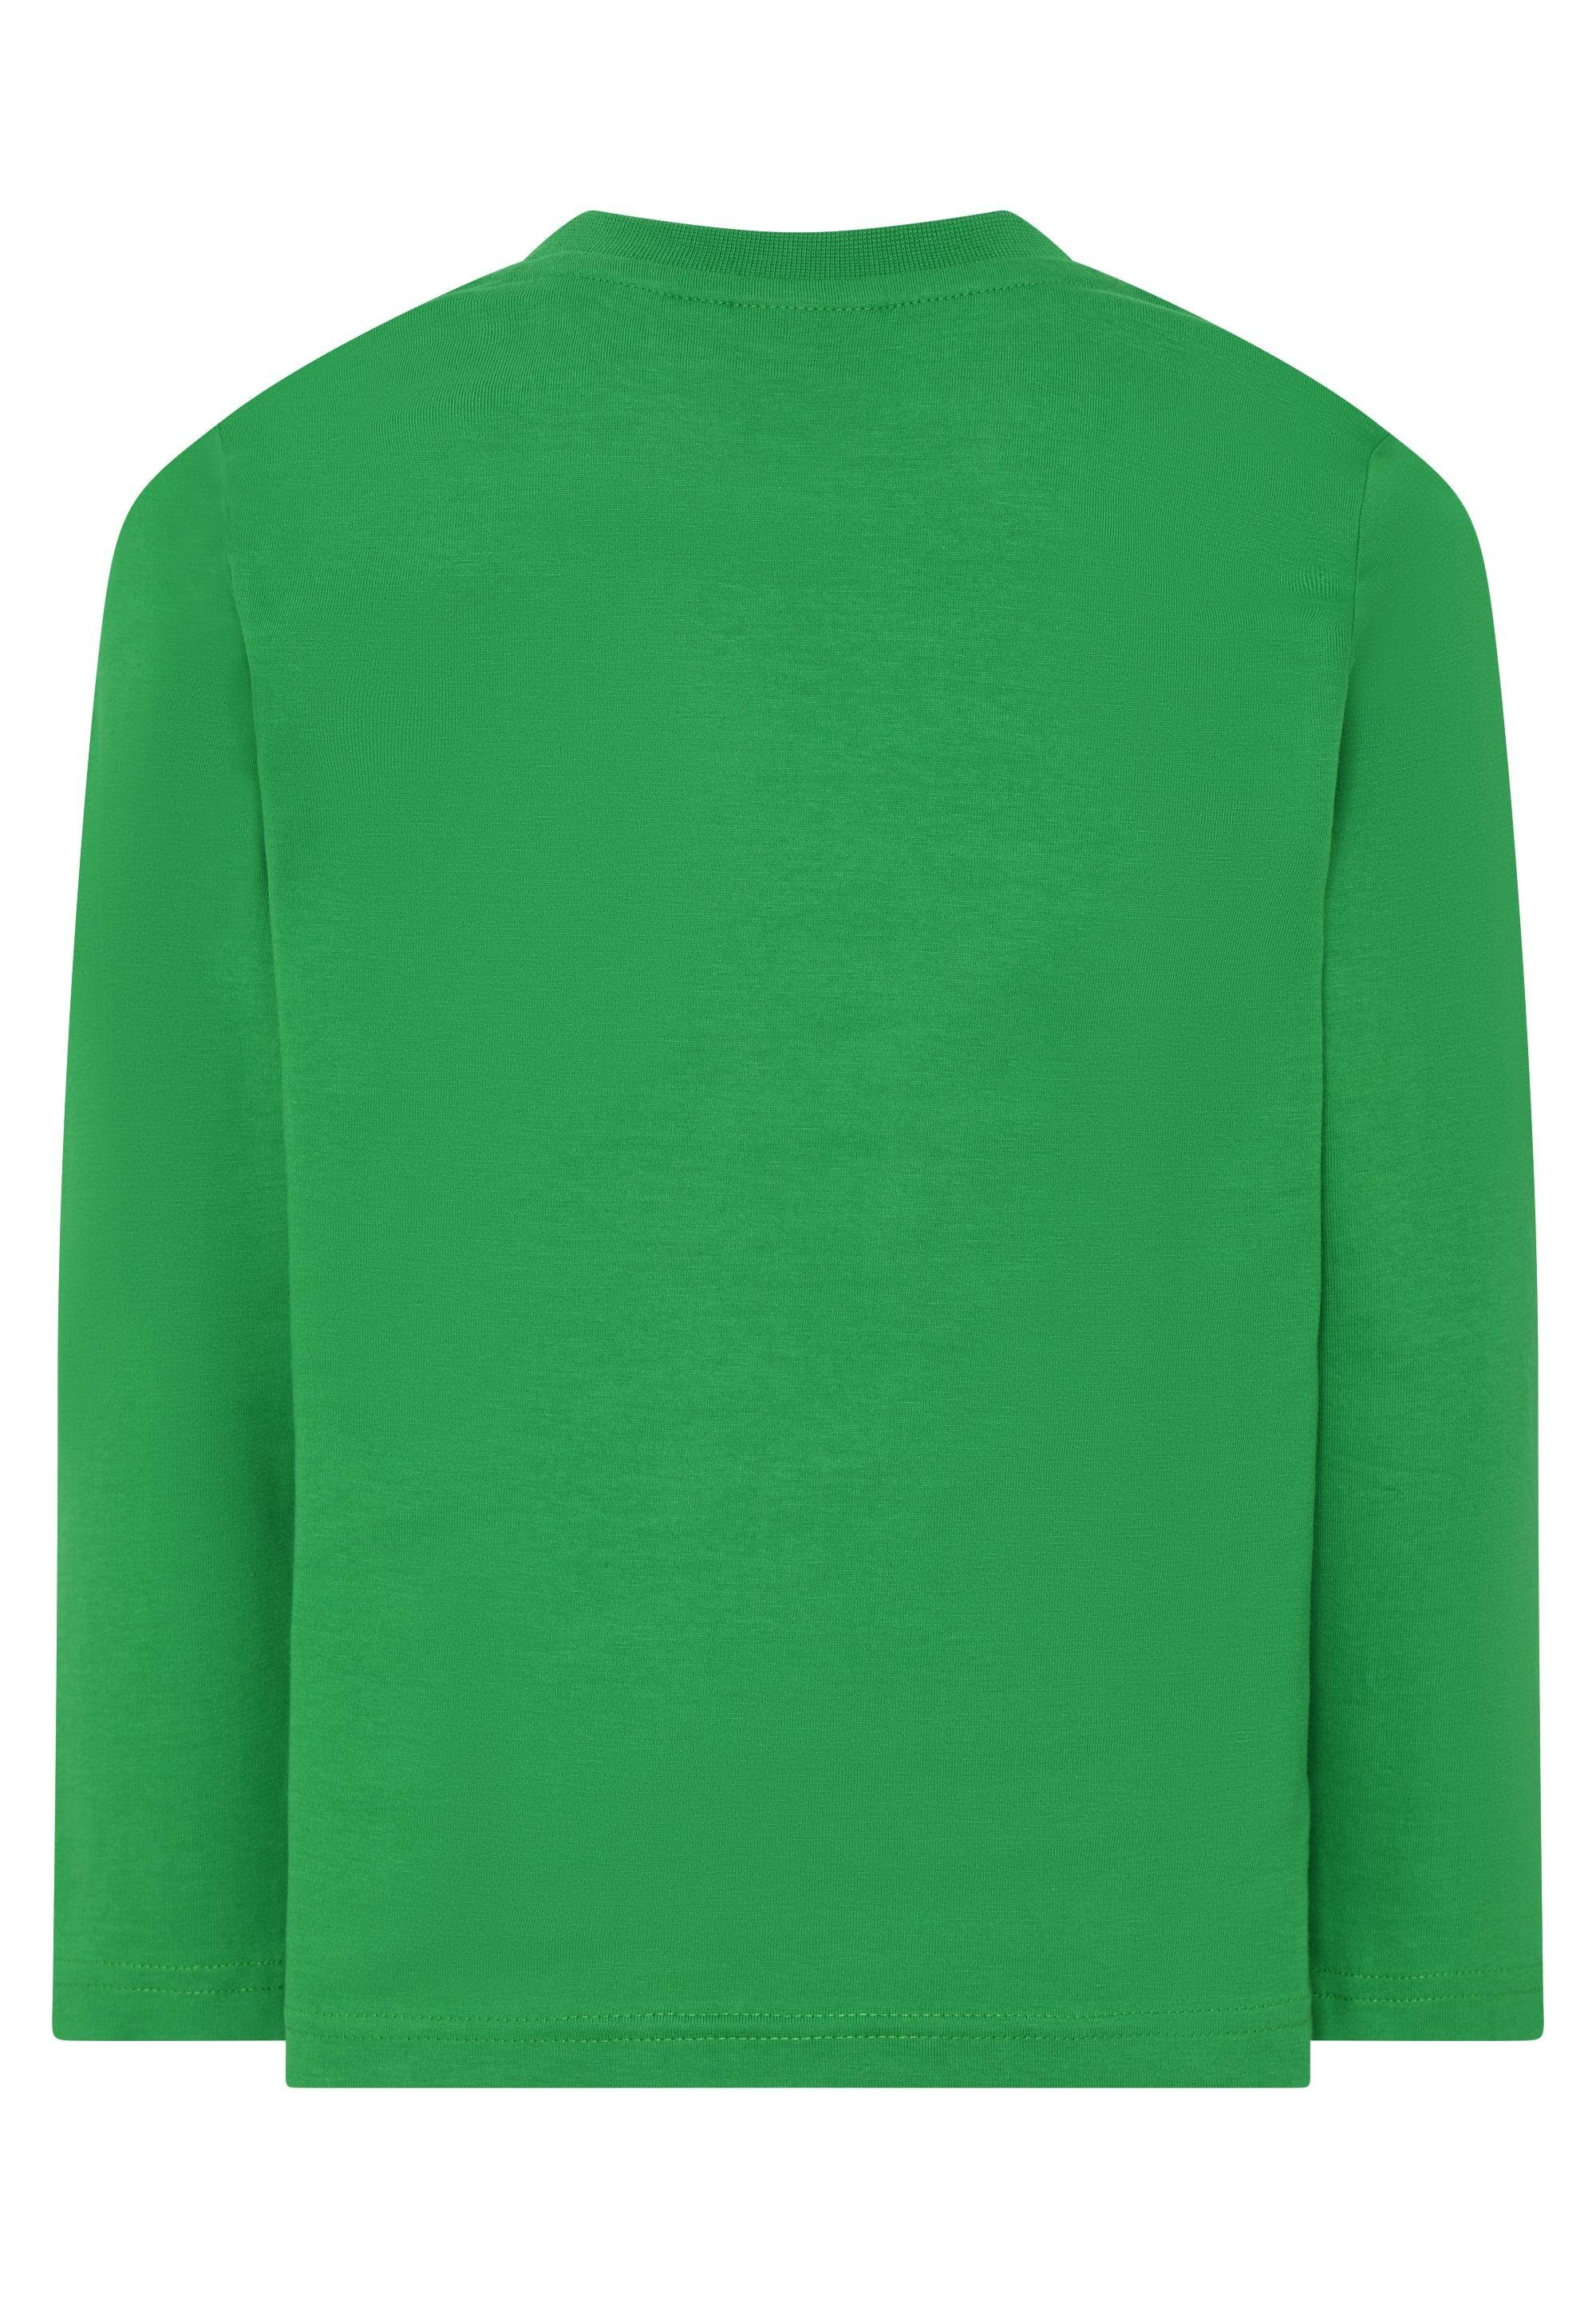 LEGO® Wear Yoga green Shirt Relax 608 & LWTAYLOR